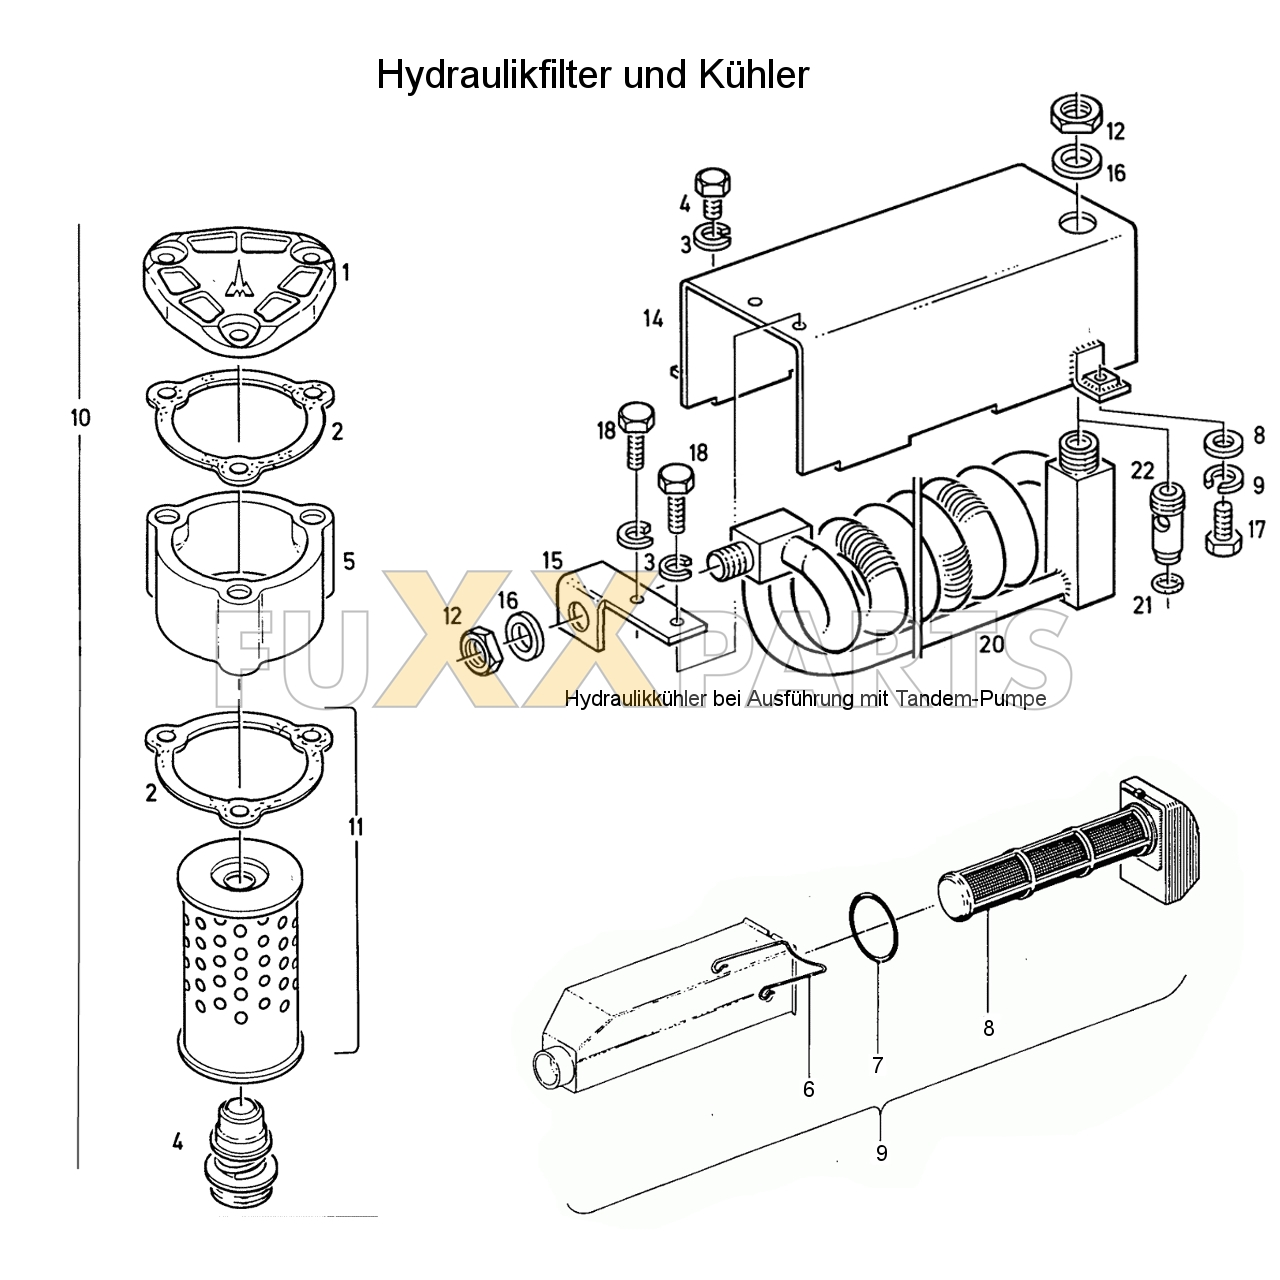 D 7807 Hydraulikfilter und Kühler